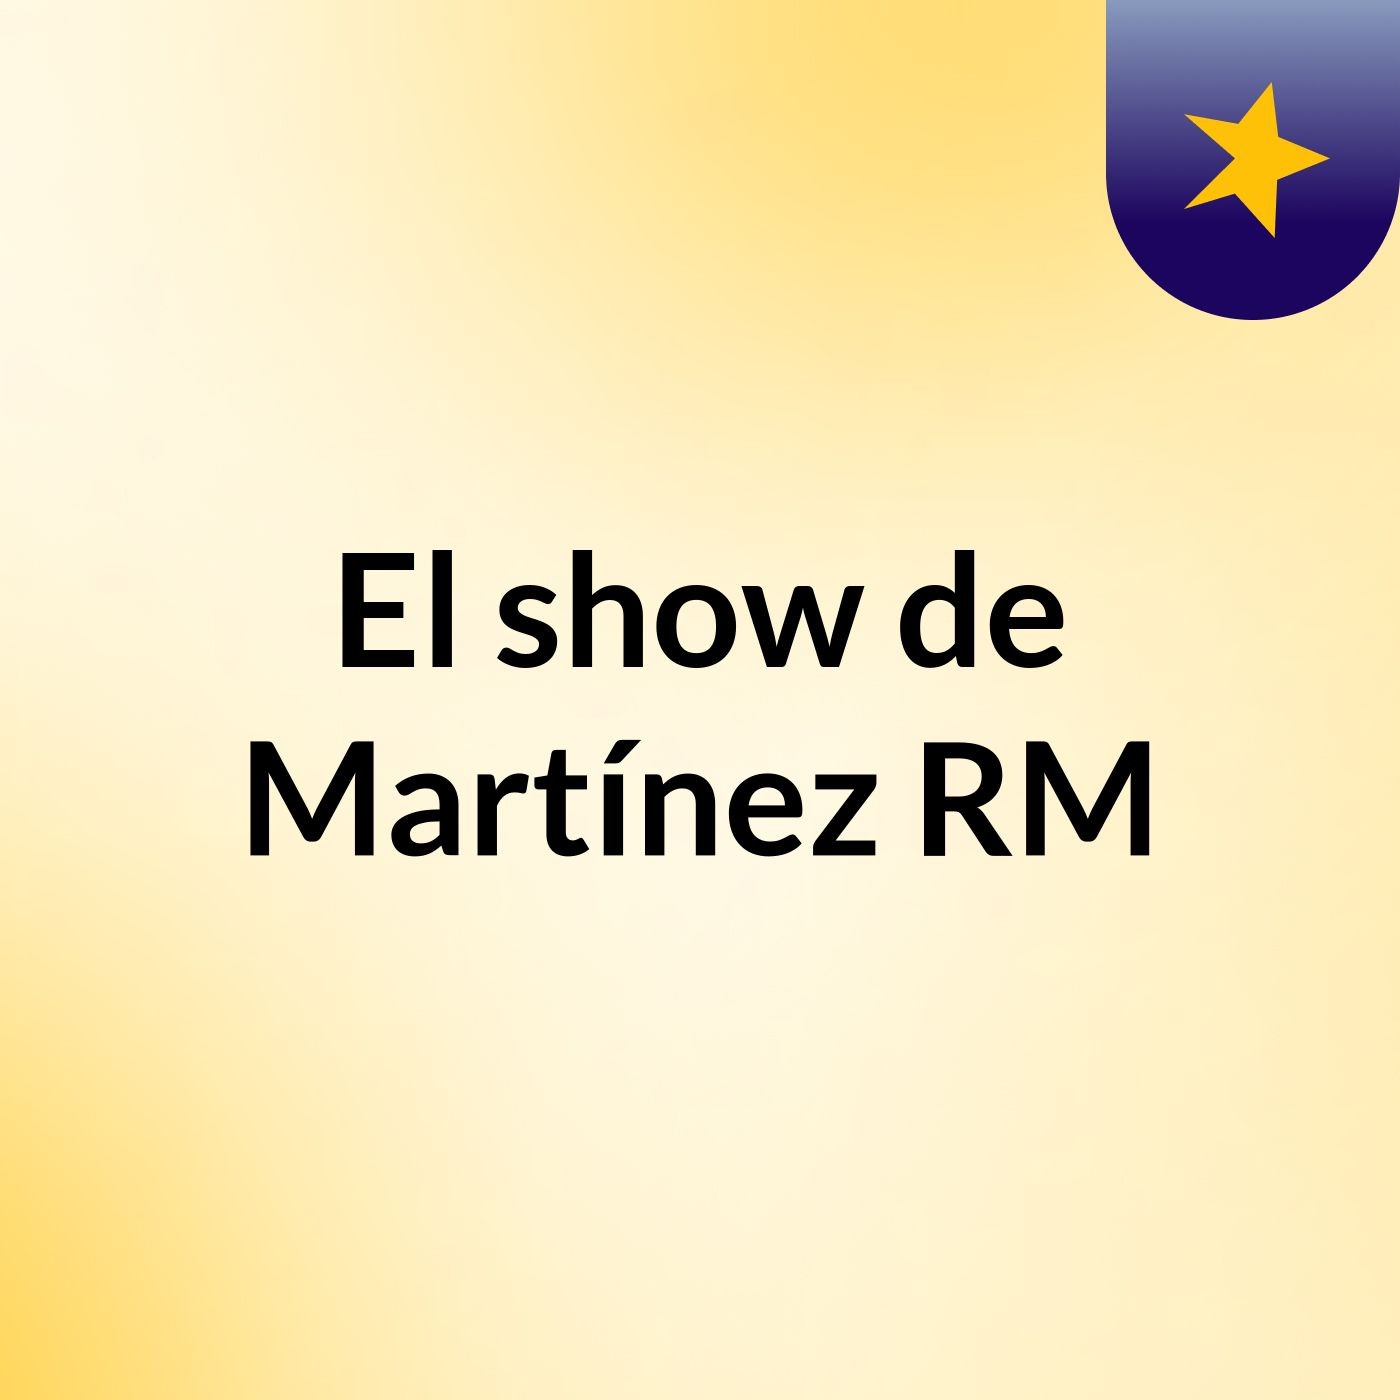 El show de Martínez RM